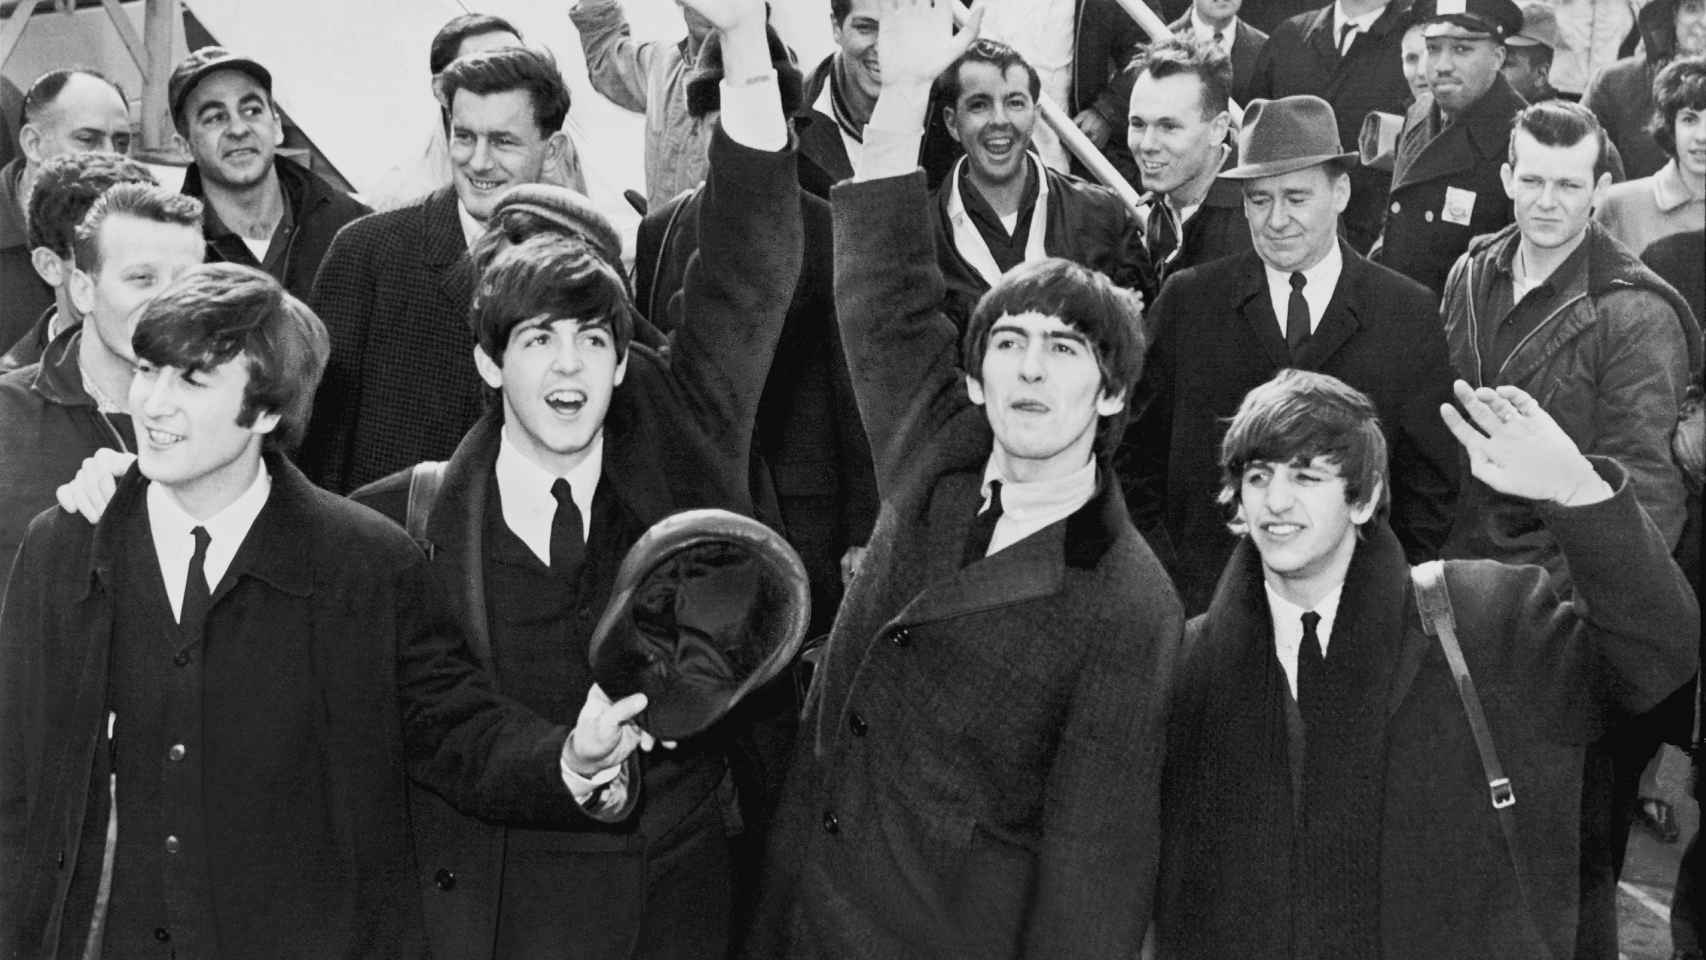 Los Beatles llegando a Estados Unidos el 7 de febrero de 1964.